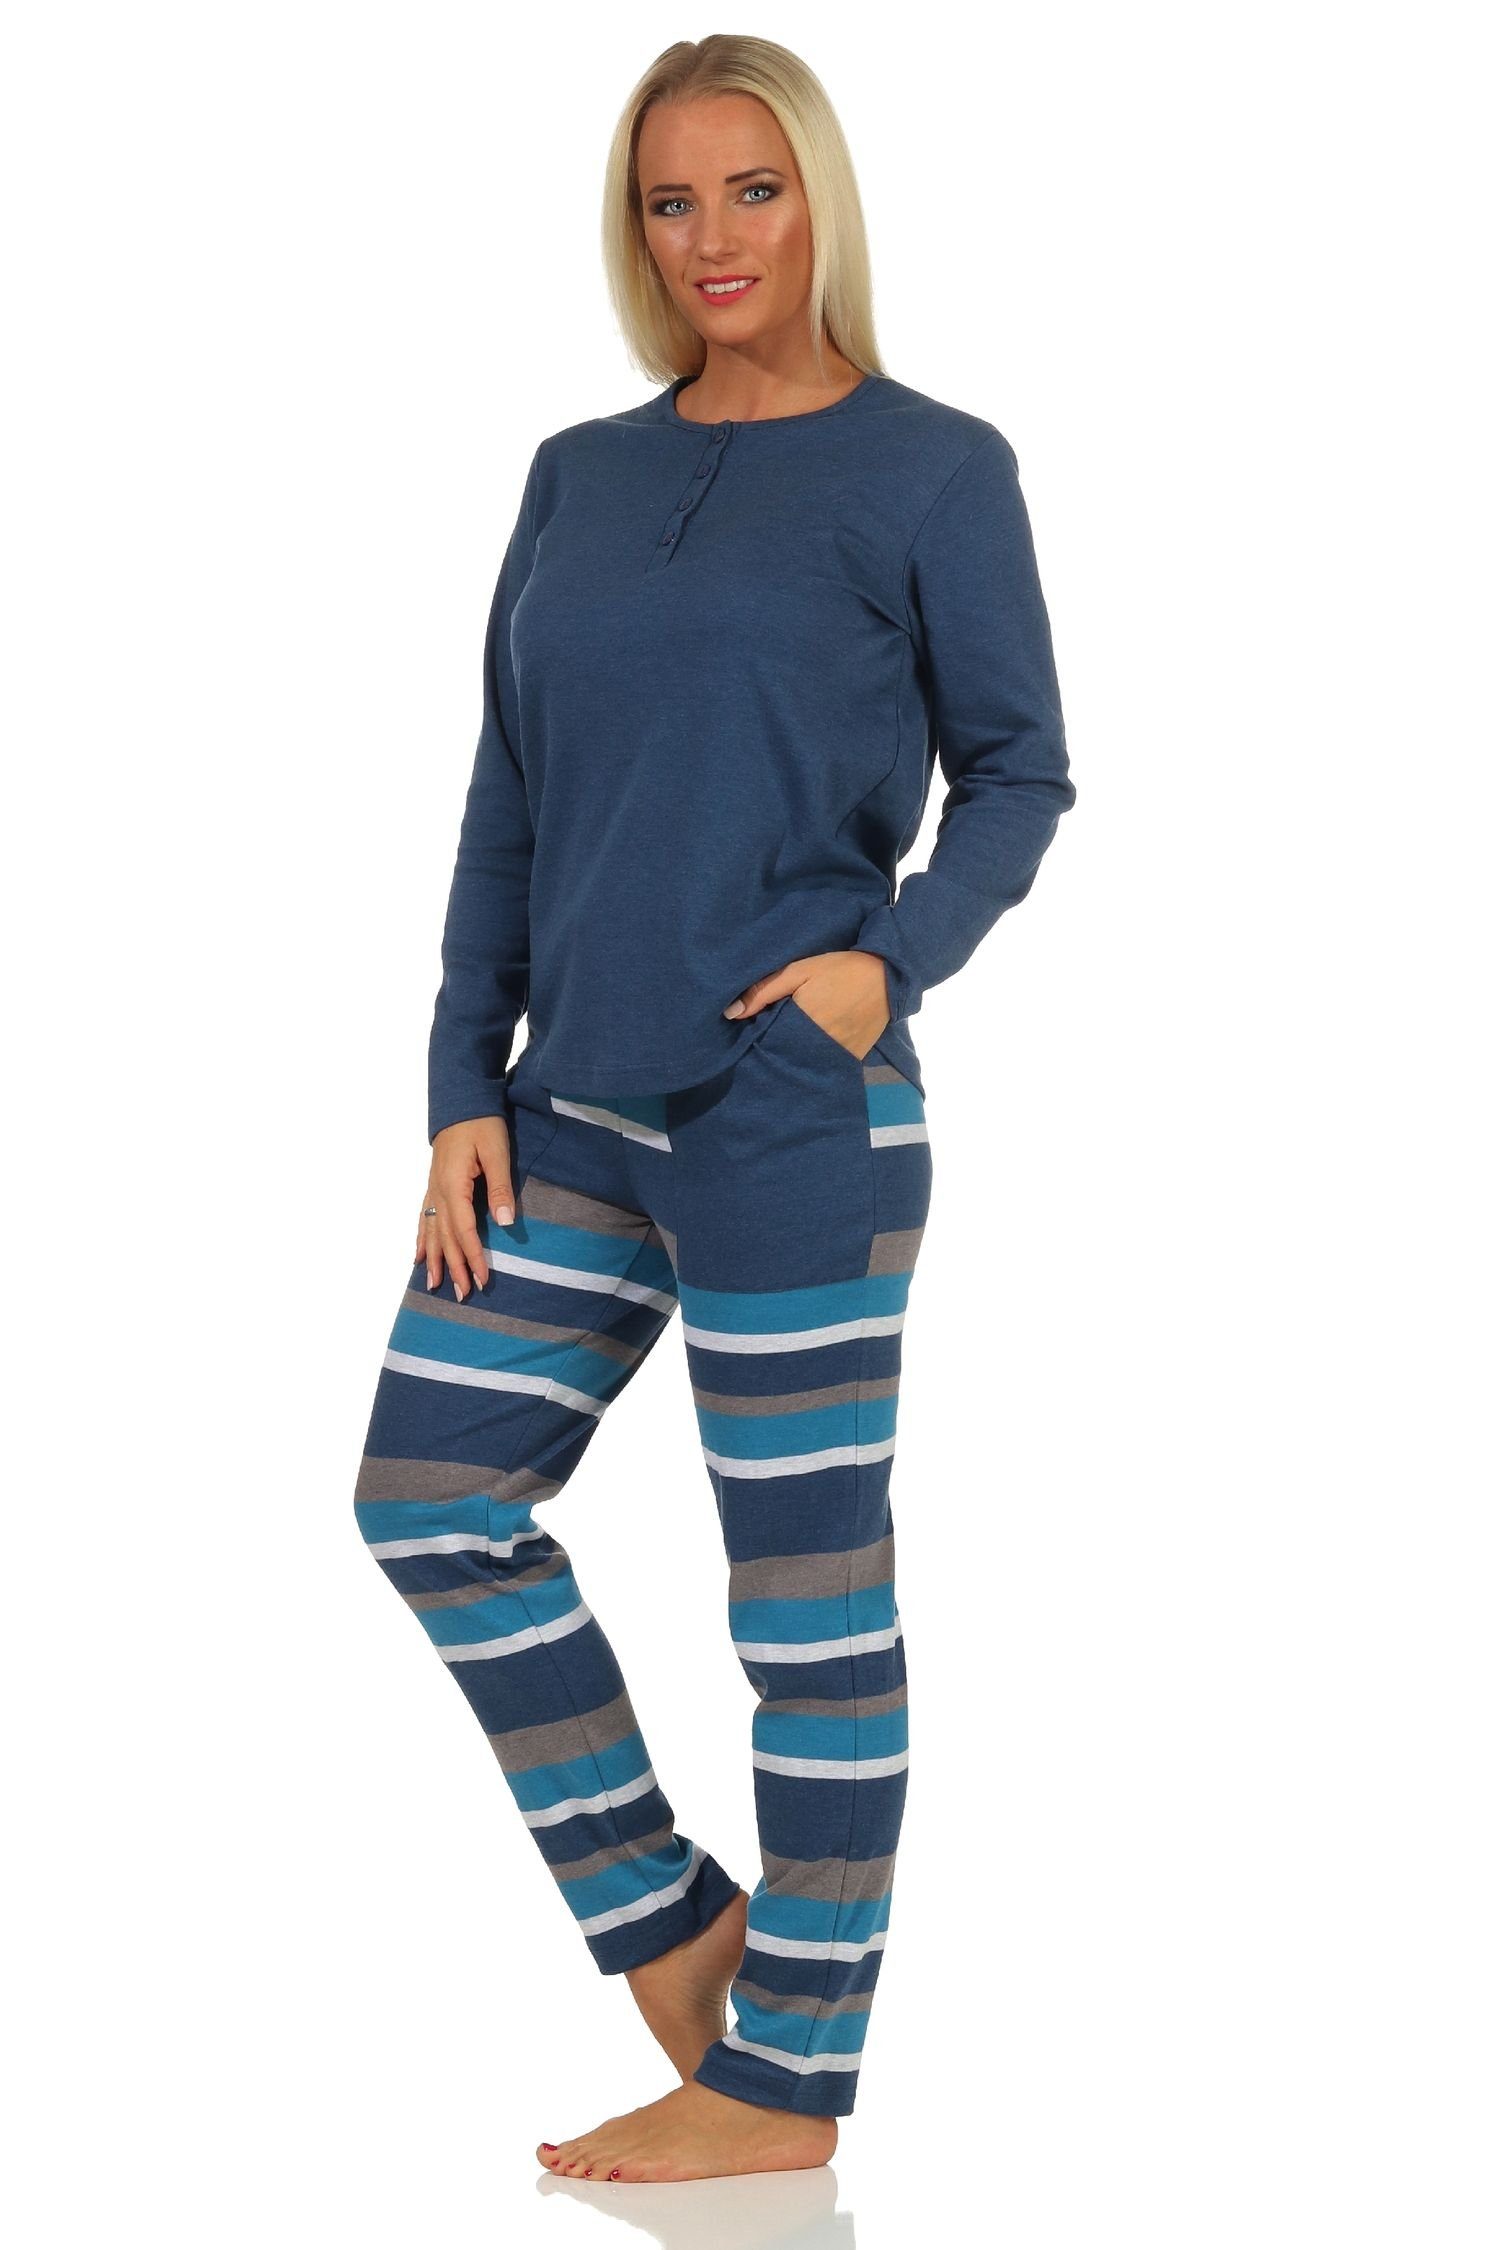 Kuschel Hose Normann Interlock Damen Qualität gestreifter Pyjama Schlafanzug blau mit in